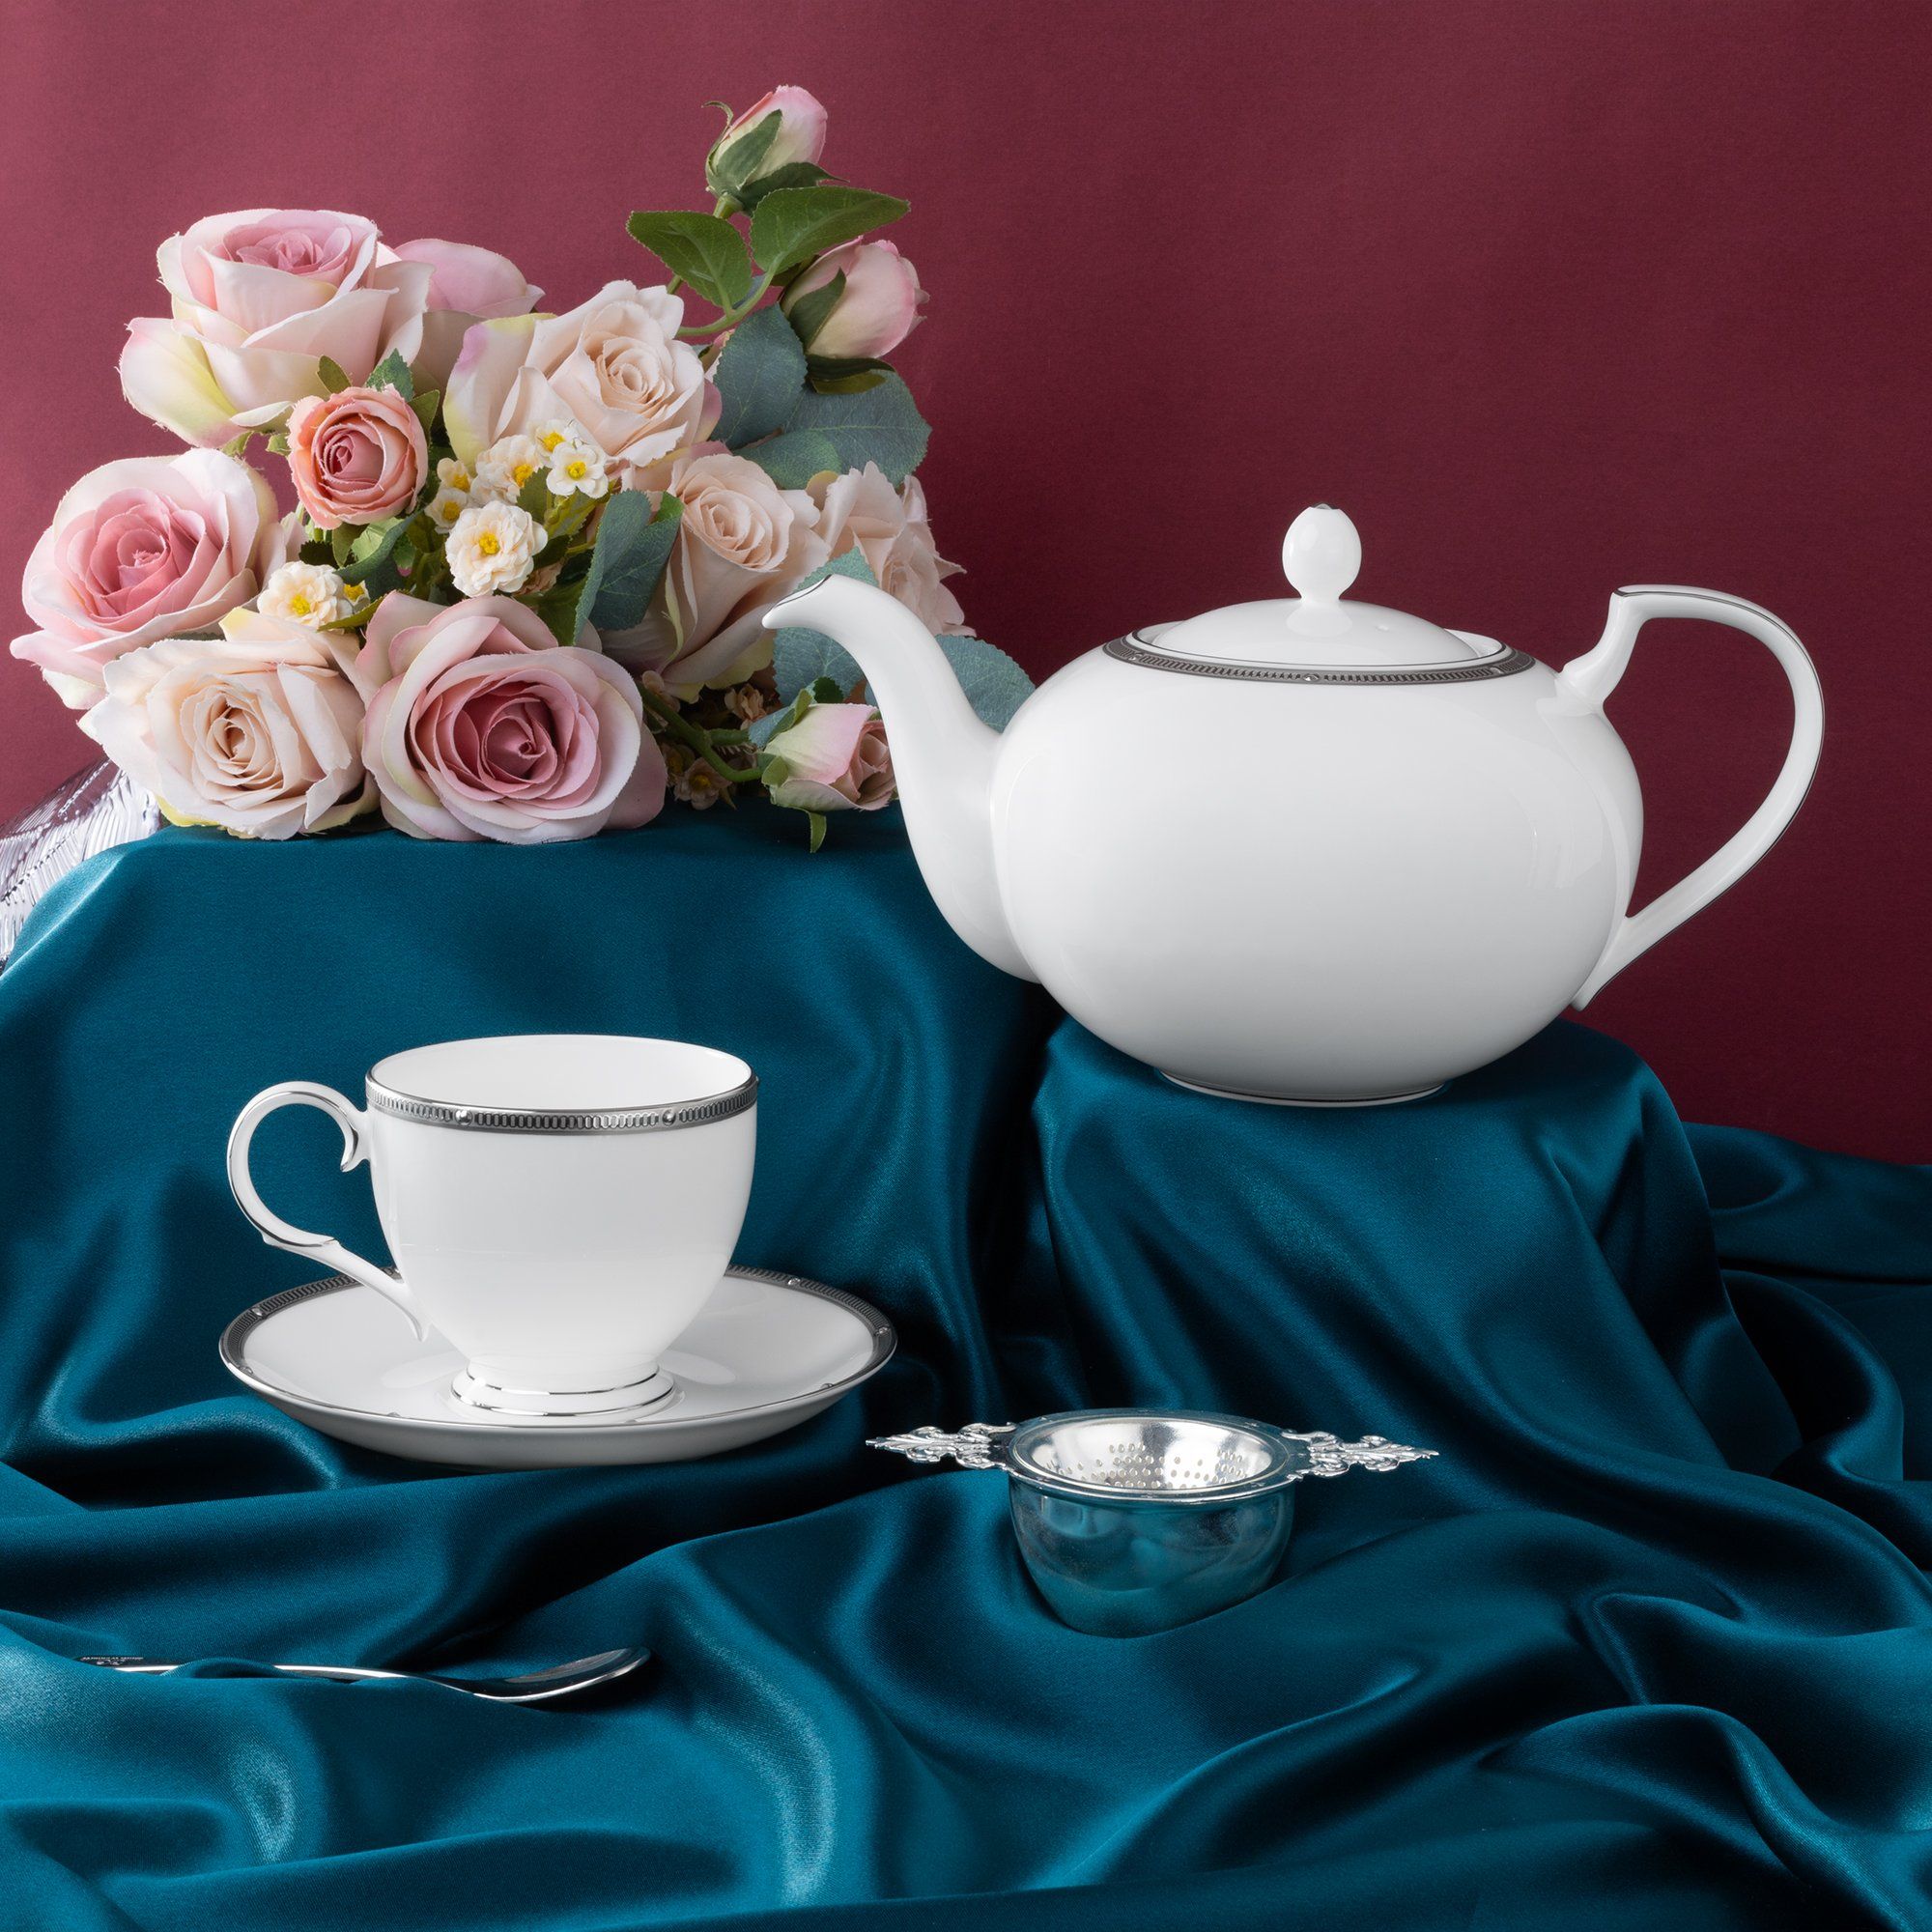  Bộ ấm chén uống trà 15 món sứ xương cao cấp viền bạch kim | Rochelle Platinum 4795L-T017A 